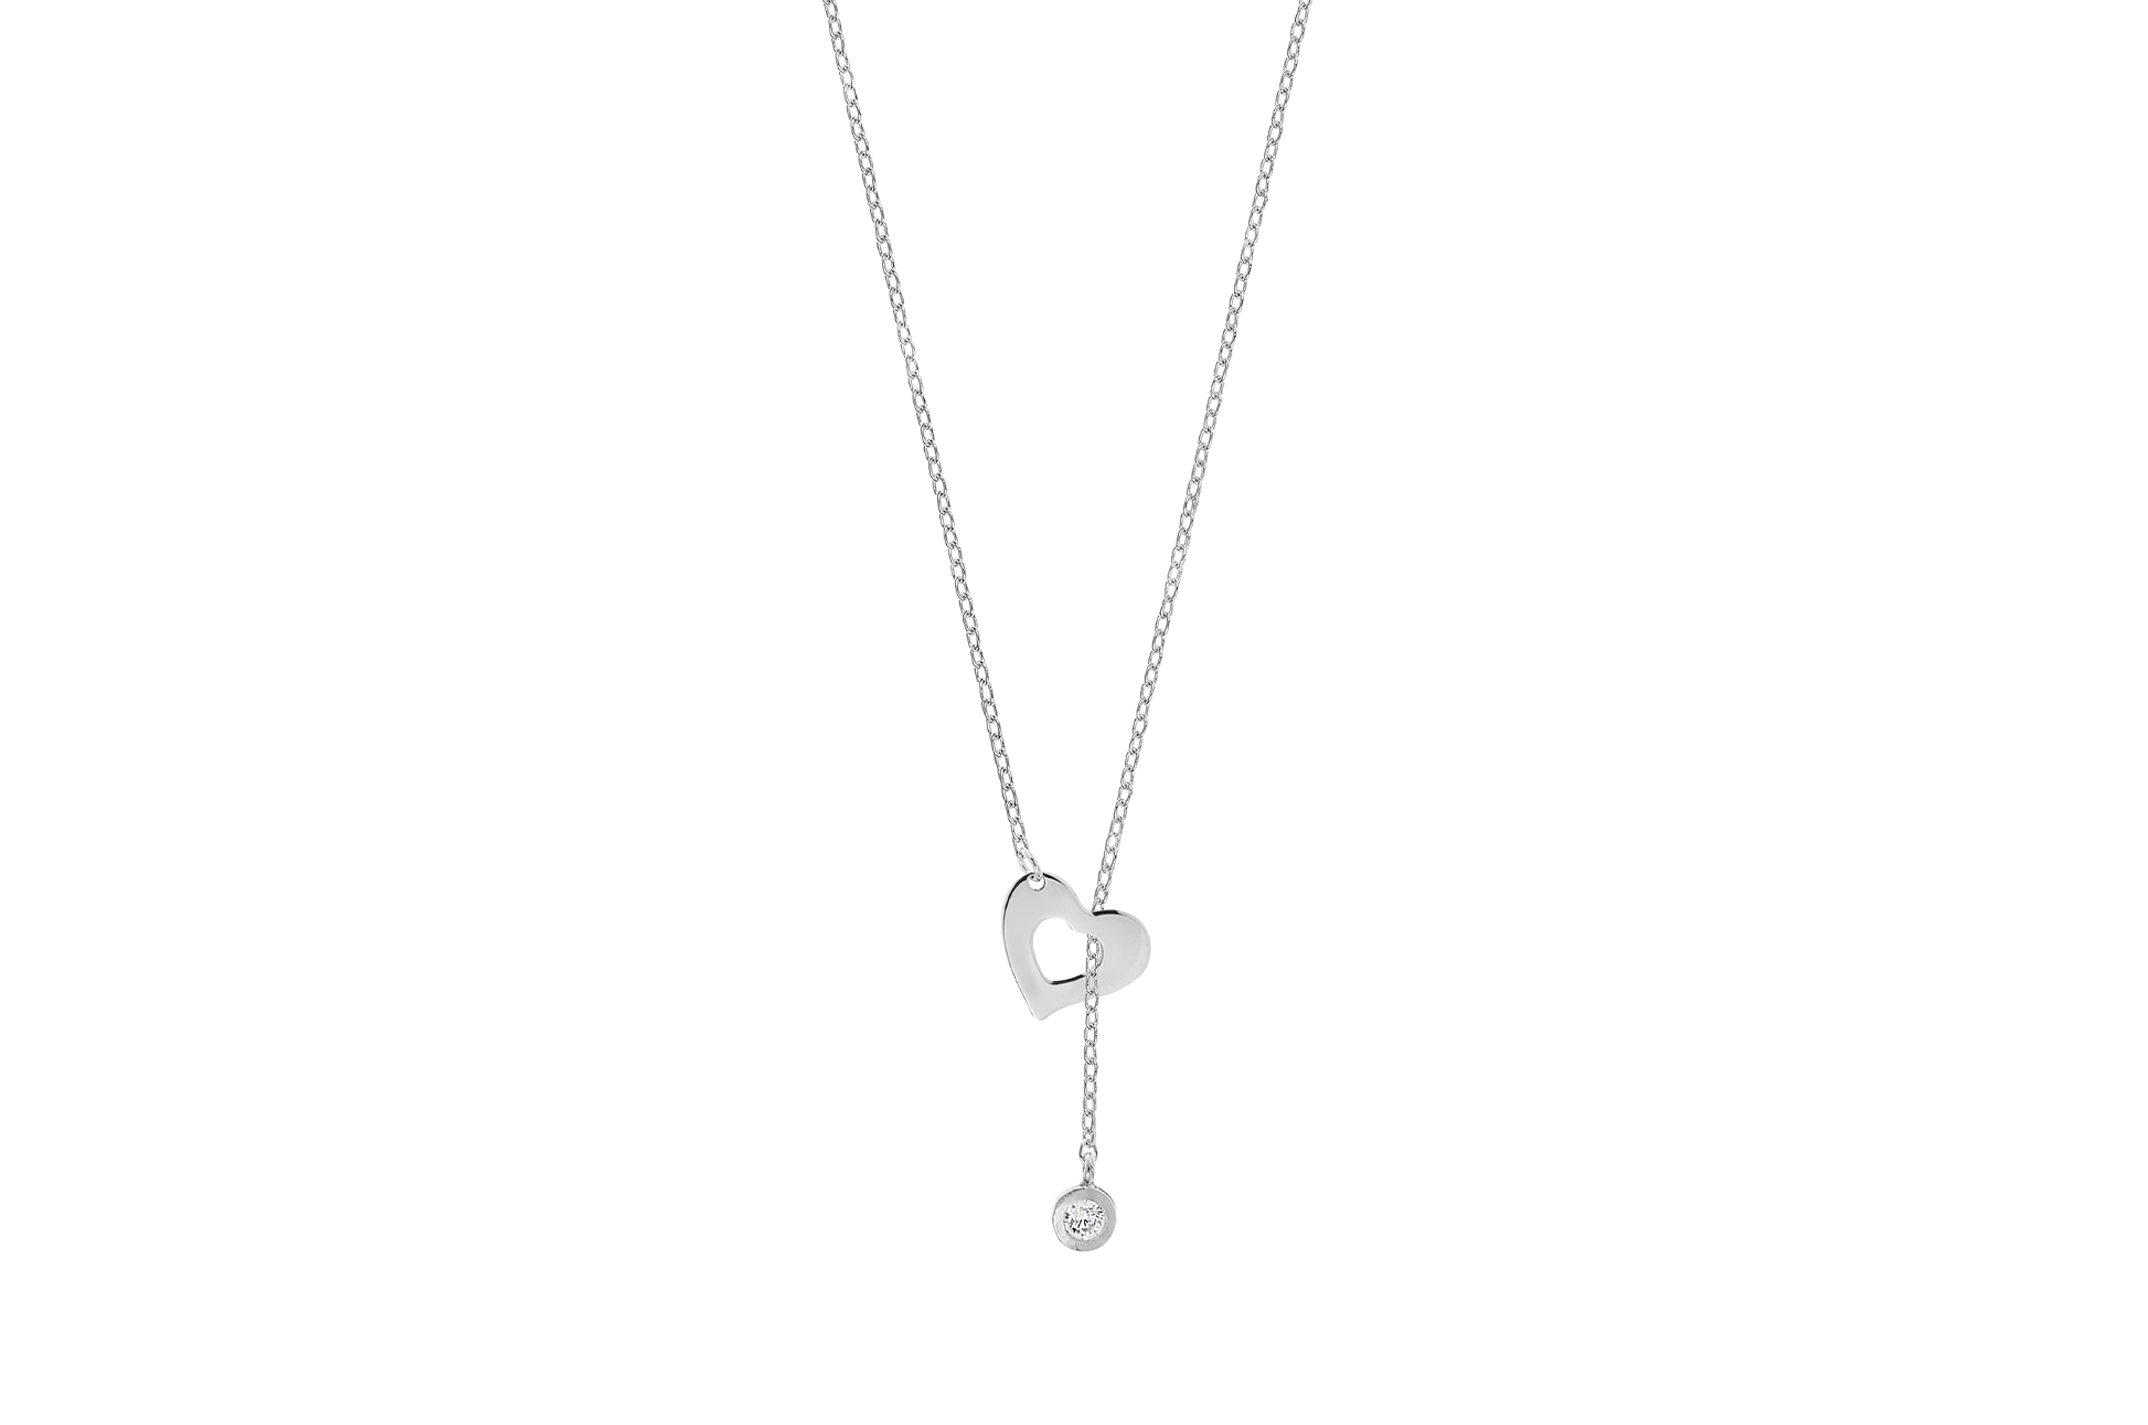 Joia: colar;Material: prata 925;Peso: 2.5 gr;Pedra: zircónia;Cor: branco;Medida: 44 cm + 5 cm;Medida pendente: 1 cm + 3 cm